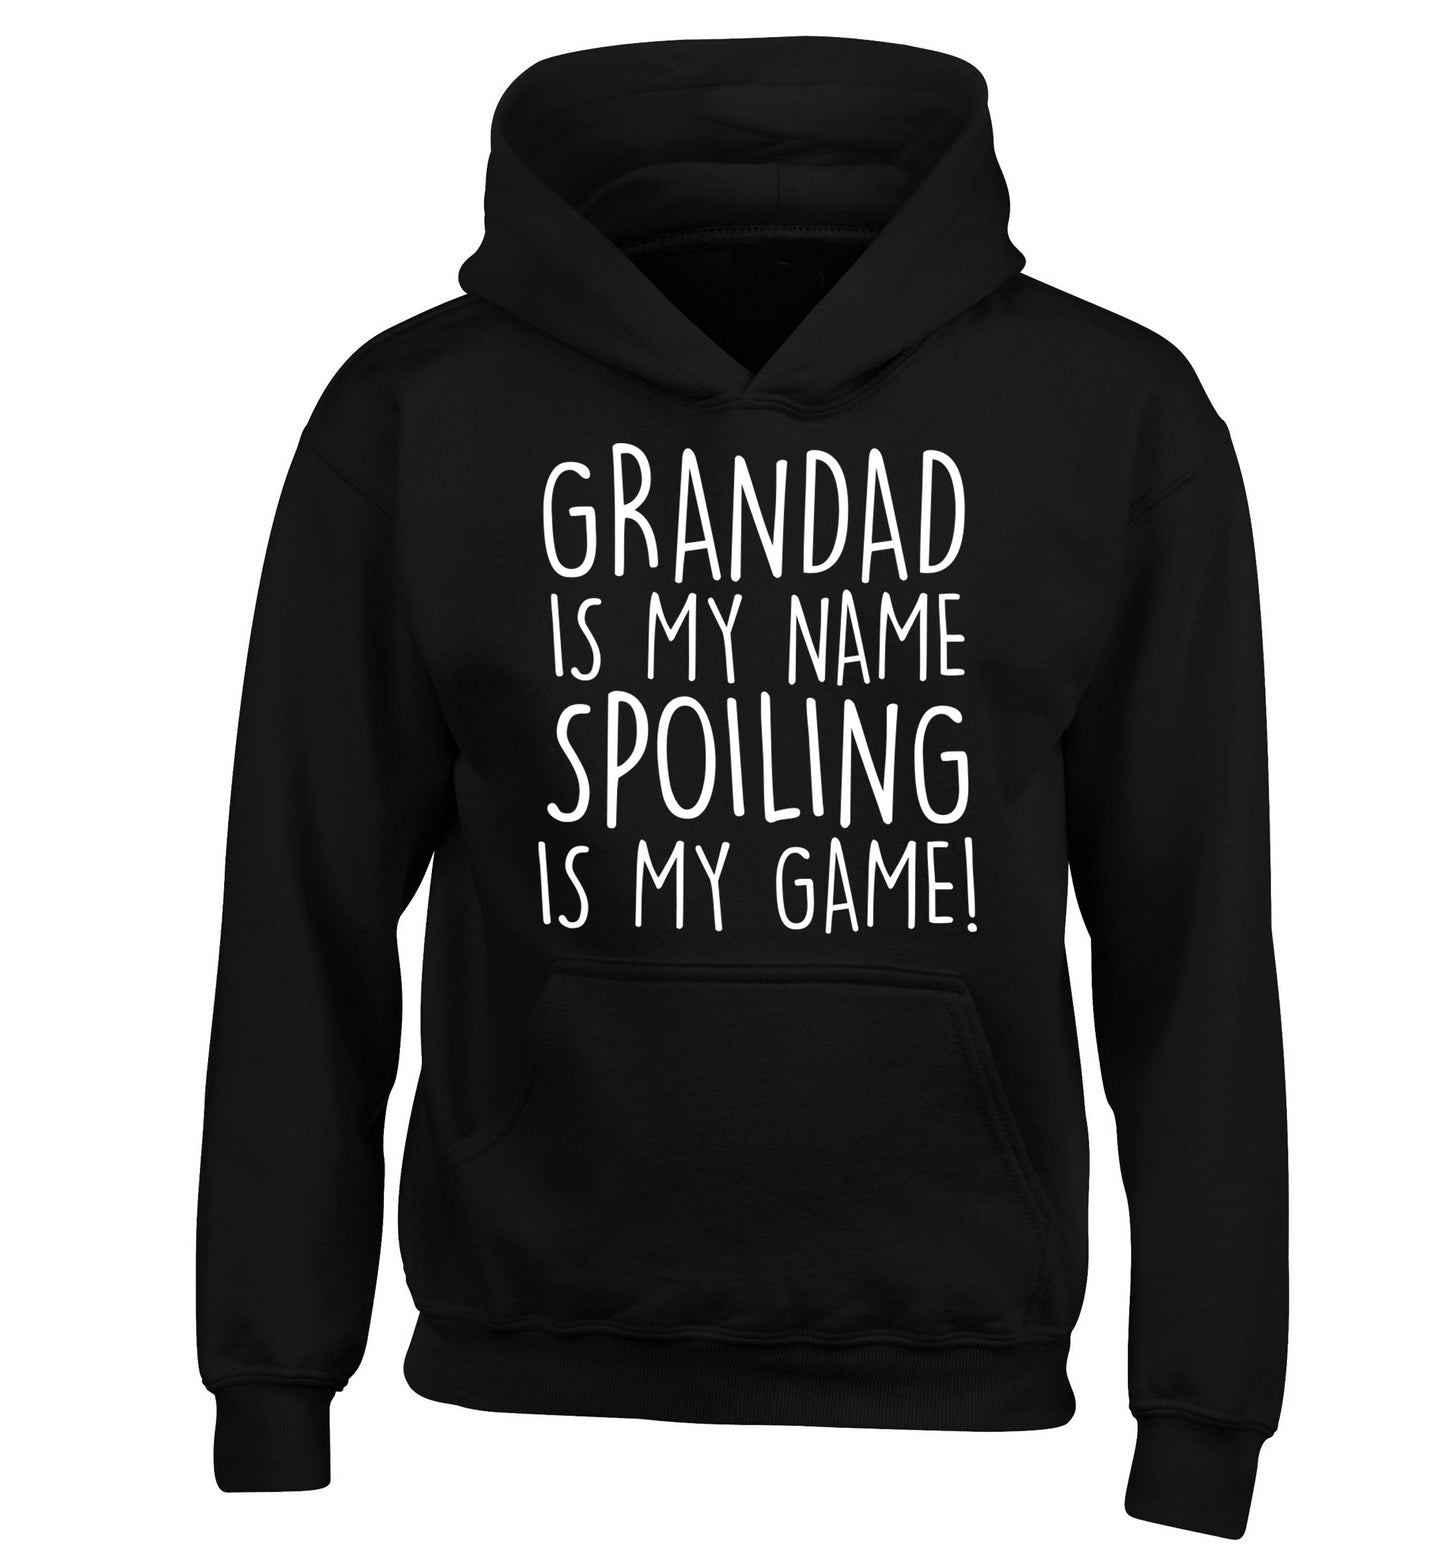 Grandad is my name, spoiling is my game children's black hoodie 12-14 Years